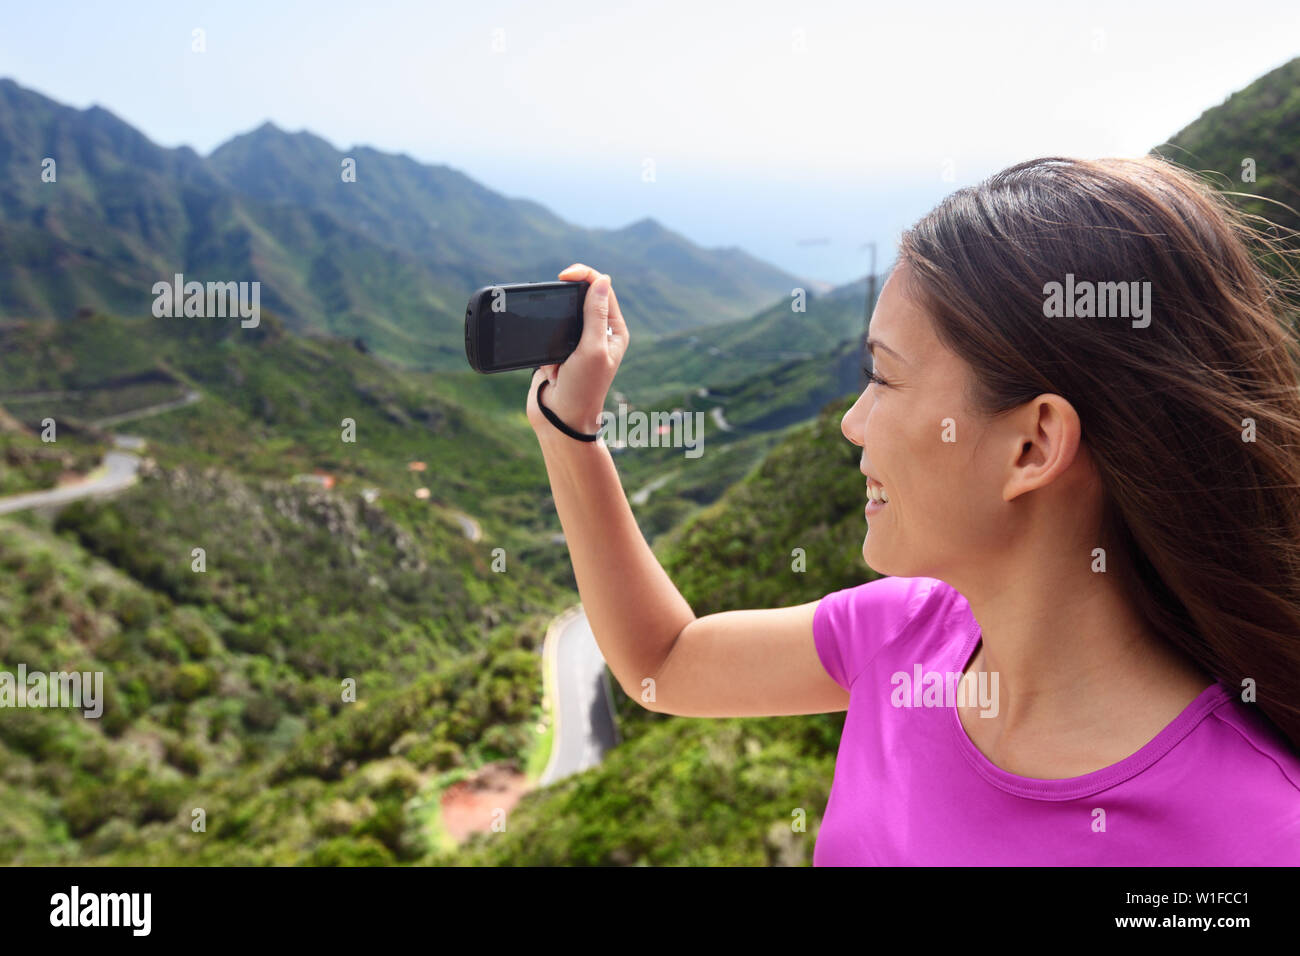 Mädchen nehmen smartphone Bild der Berg Natur. Weibliche touristische Reisen auf Reise oder Wanderung in den Bergen Anaga Teneriffa, Kanarische Inseln. Sommer Ferien. Stockfoto